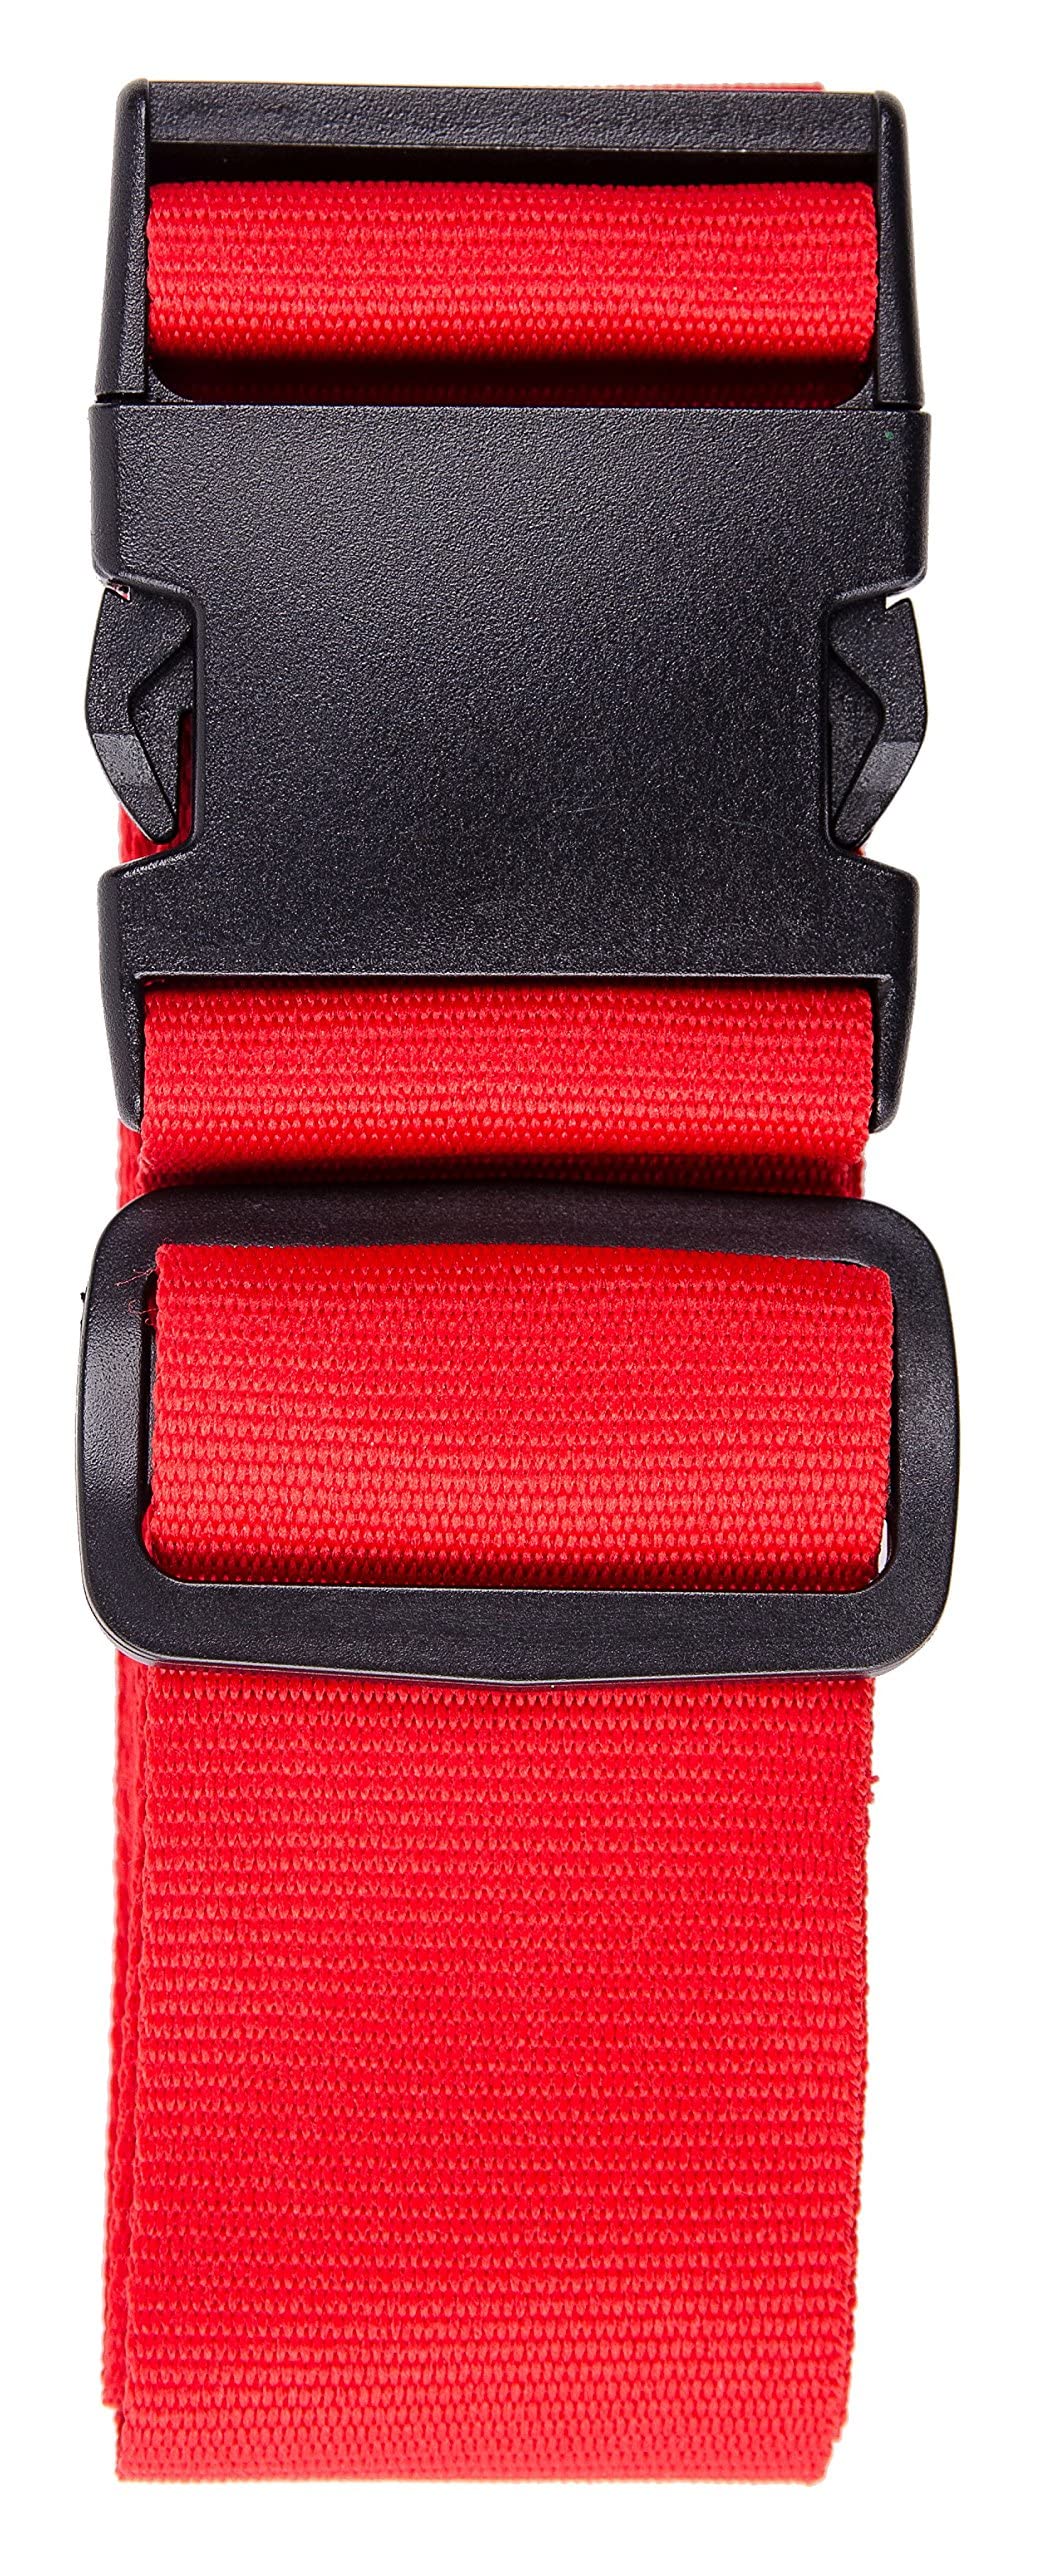 Karteo Kofferband rot Koffergurt [1 Stück] Reisegurt für Koffer und Taschen als Gepäckgurte 5 cm Polyester Gurt bis 155 cm Länge verstellbar von Karteo